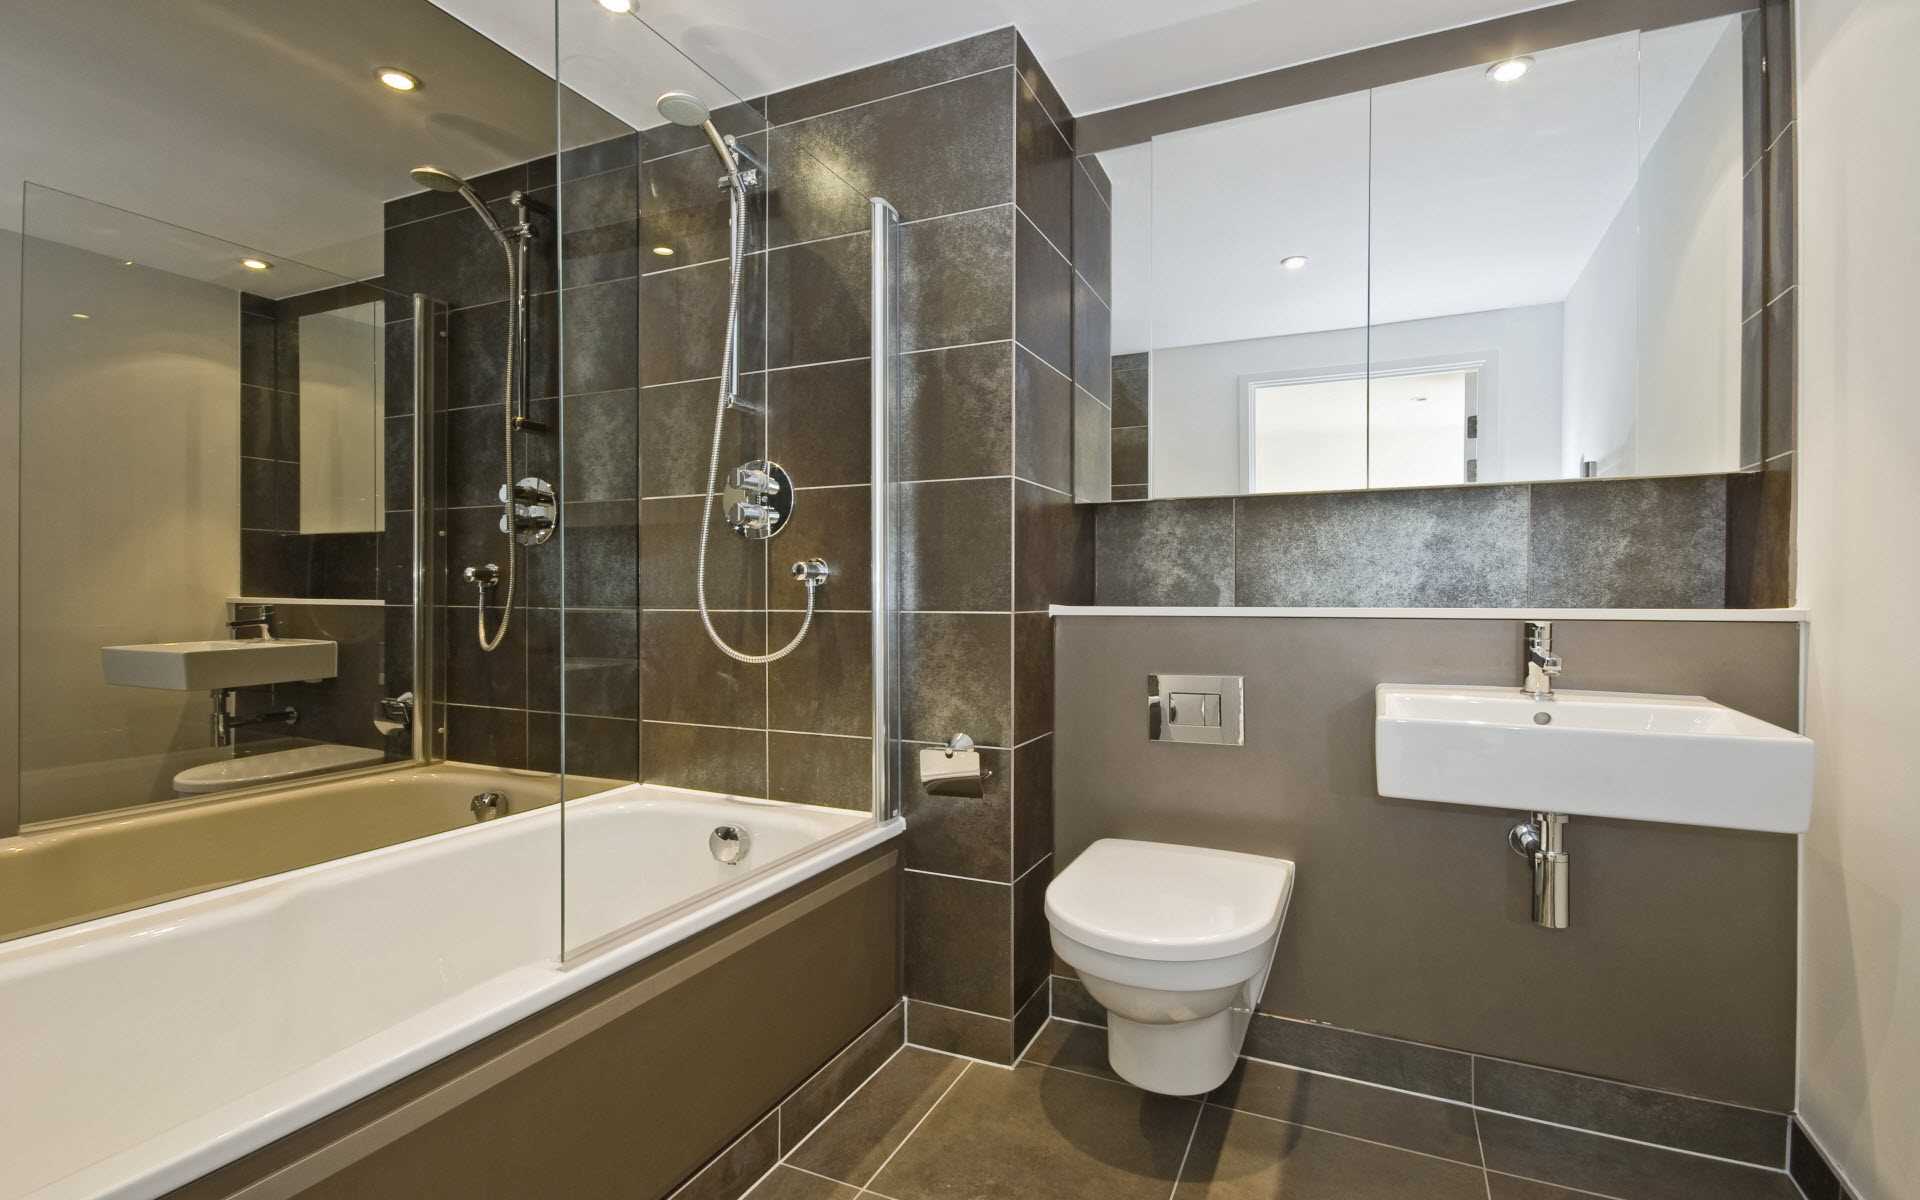 idée d'un design inhabituel d'une salle de bain de 2,5 m2